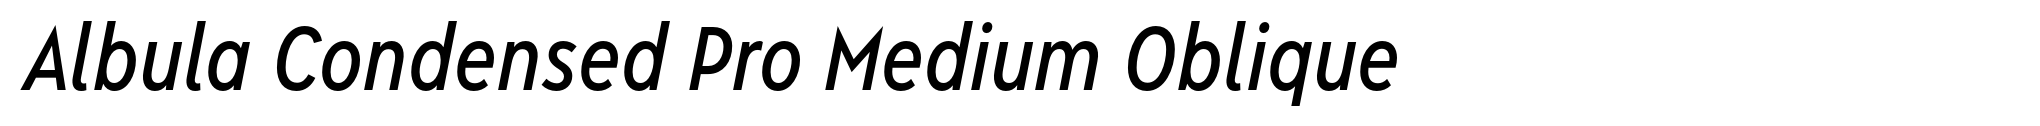 Albula Condensed Pro Medium Oblique image